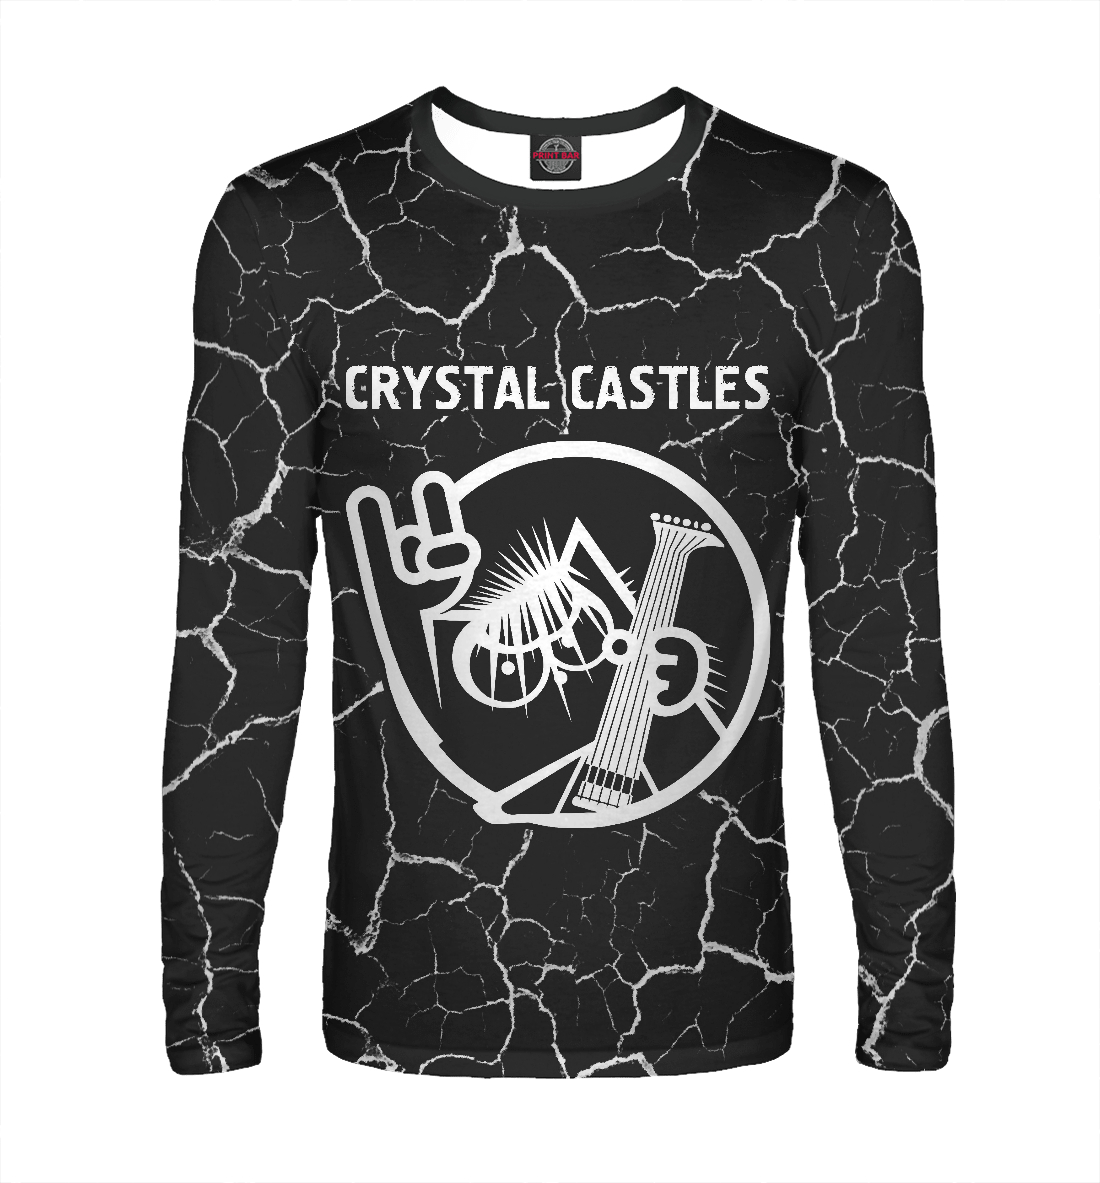 

Crystal Castles + Кот